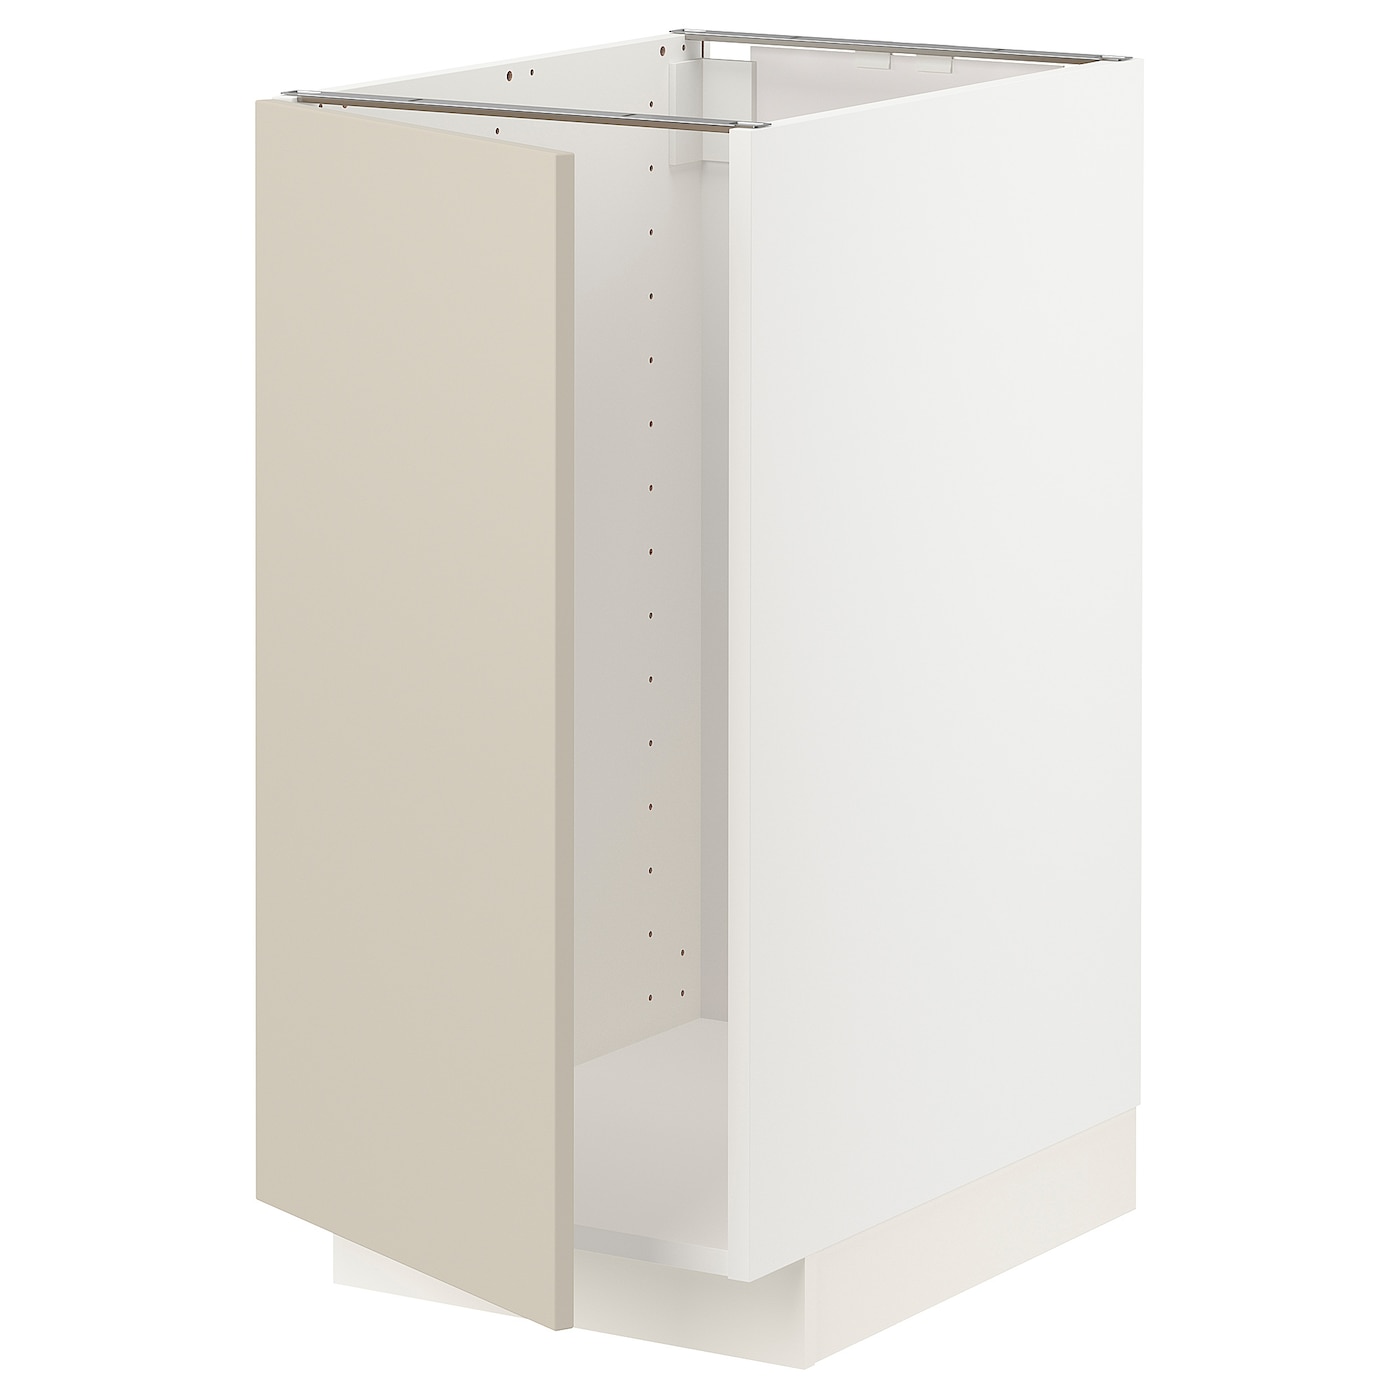 Напольный шкаф  - IKEA METOD, 88x62x40см, белый/бежевый, МЕТОД ИКЕА